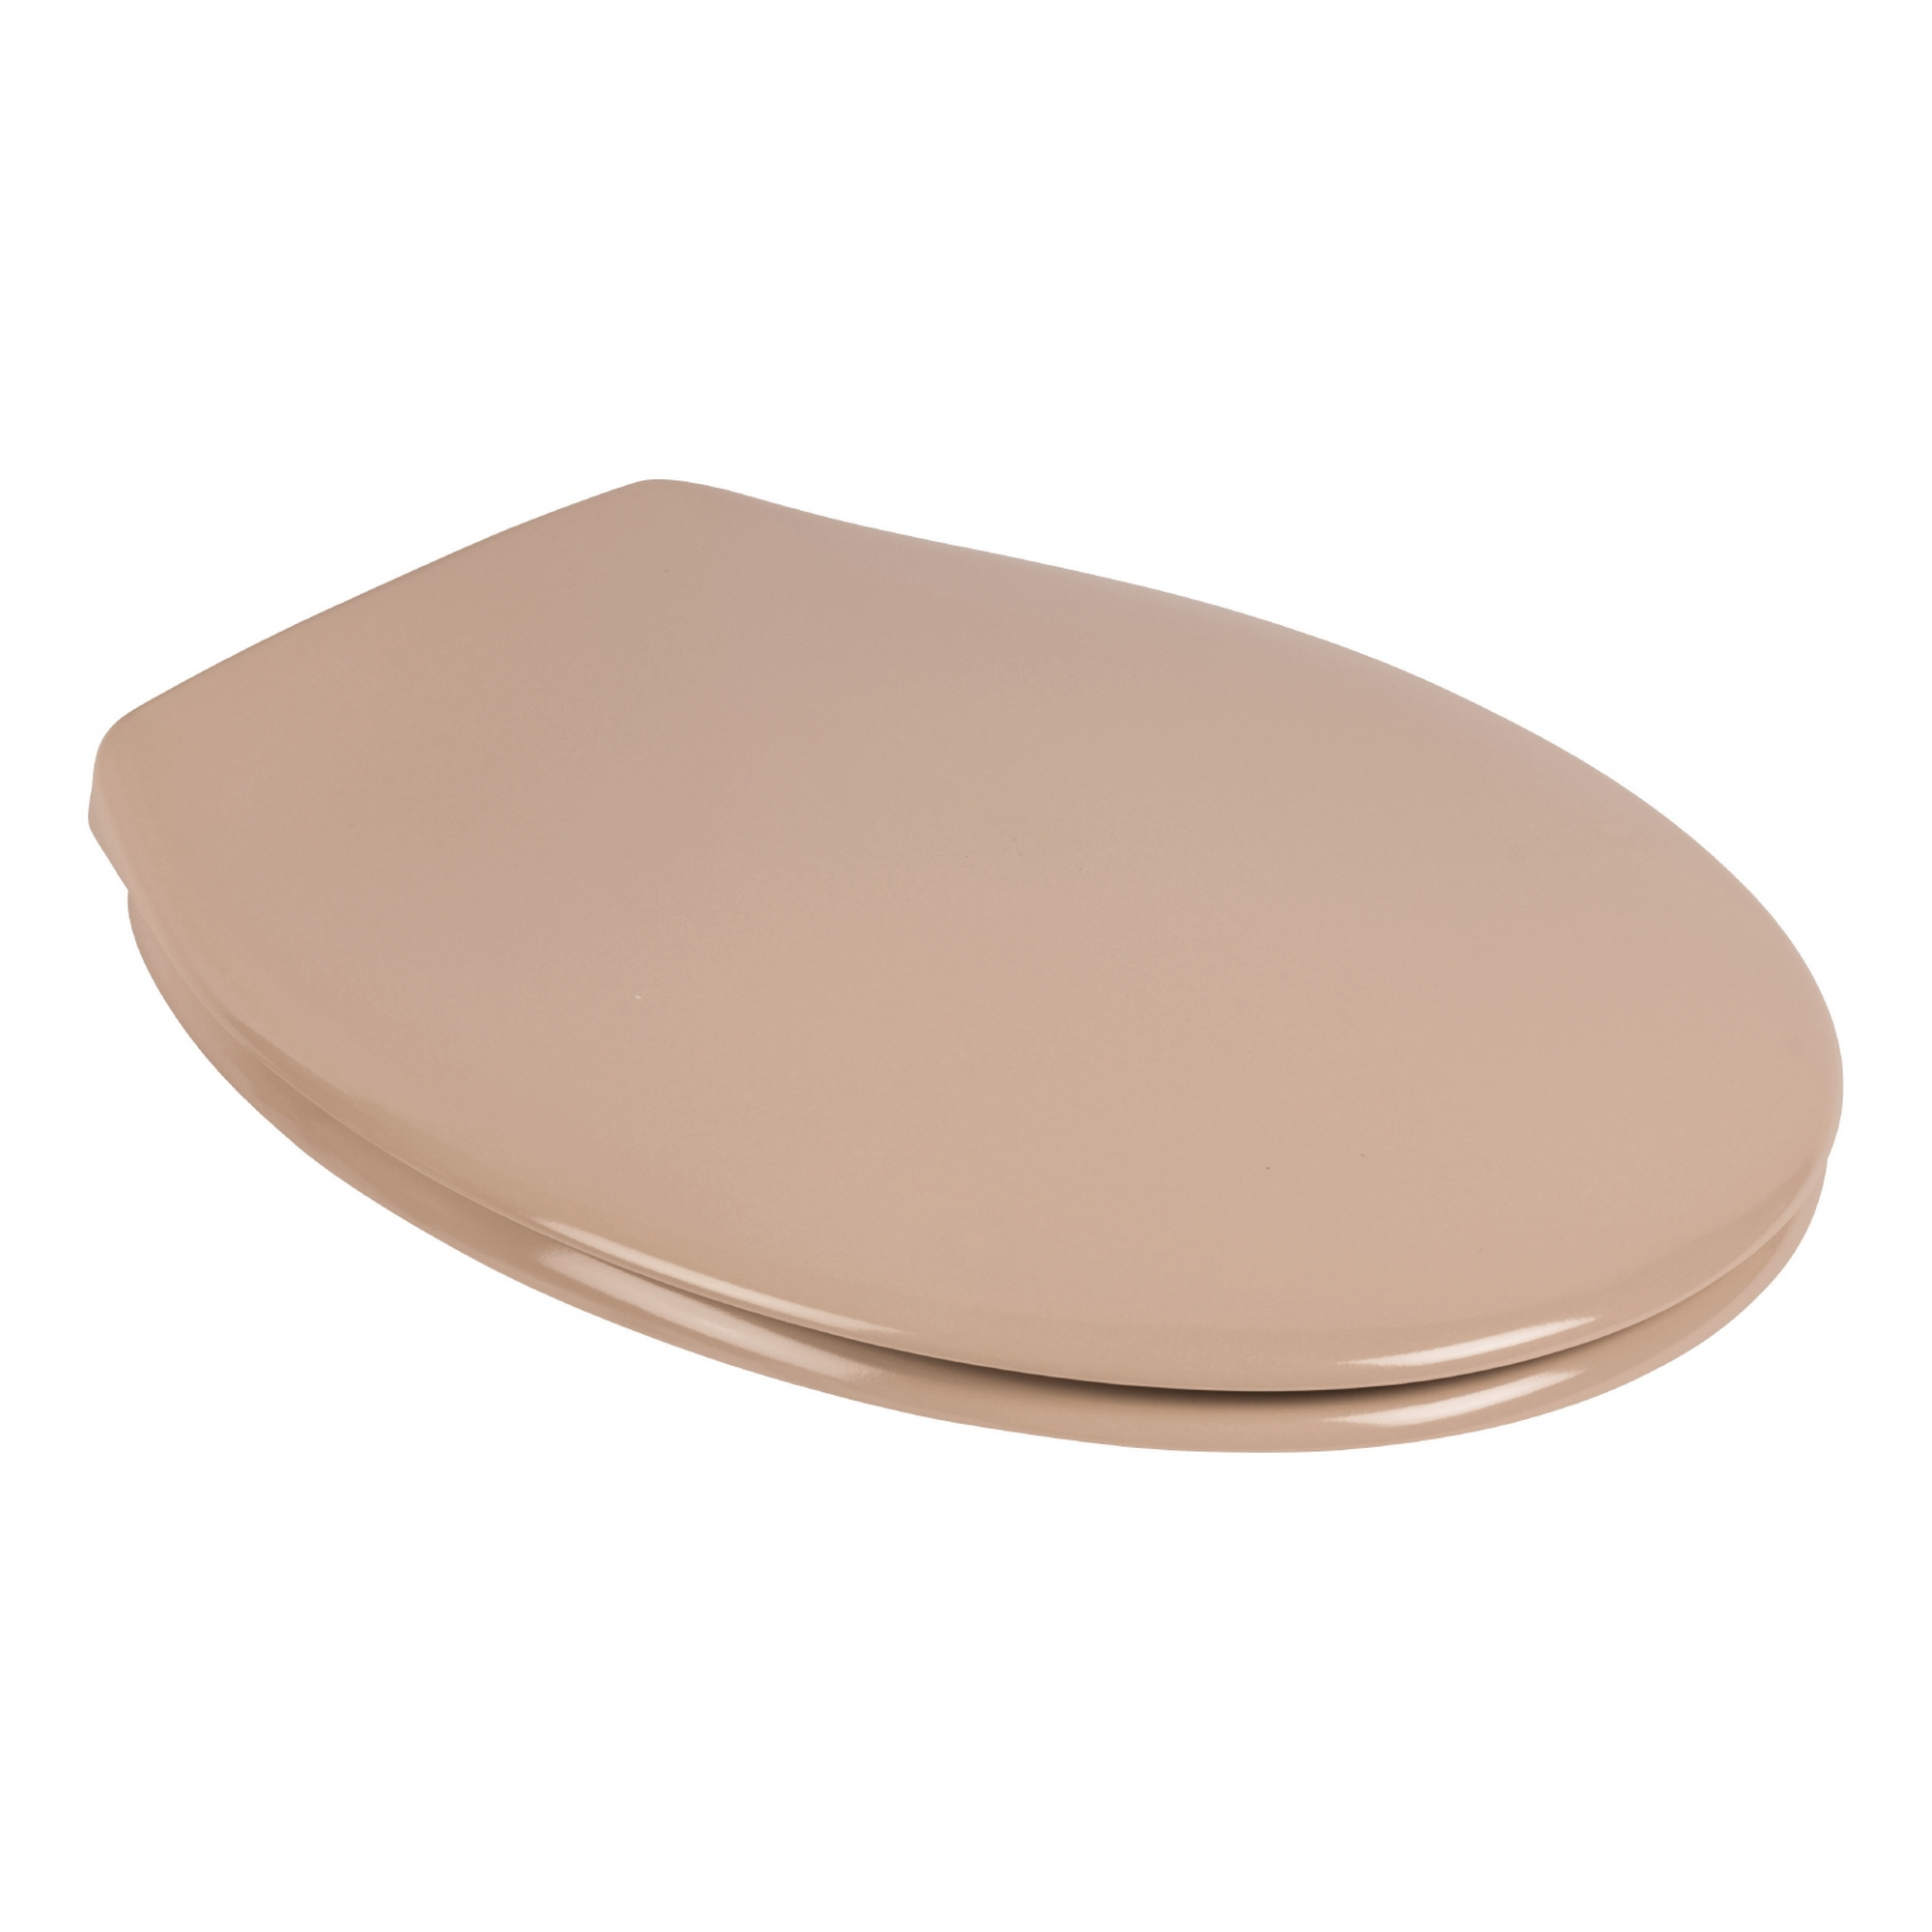 WC-Sitz 'Siena' beige Duroplast + product picture